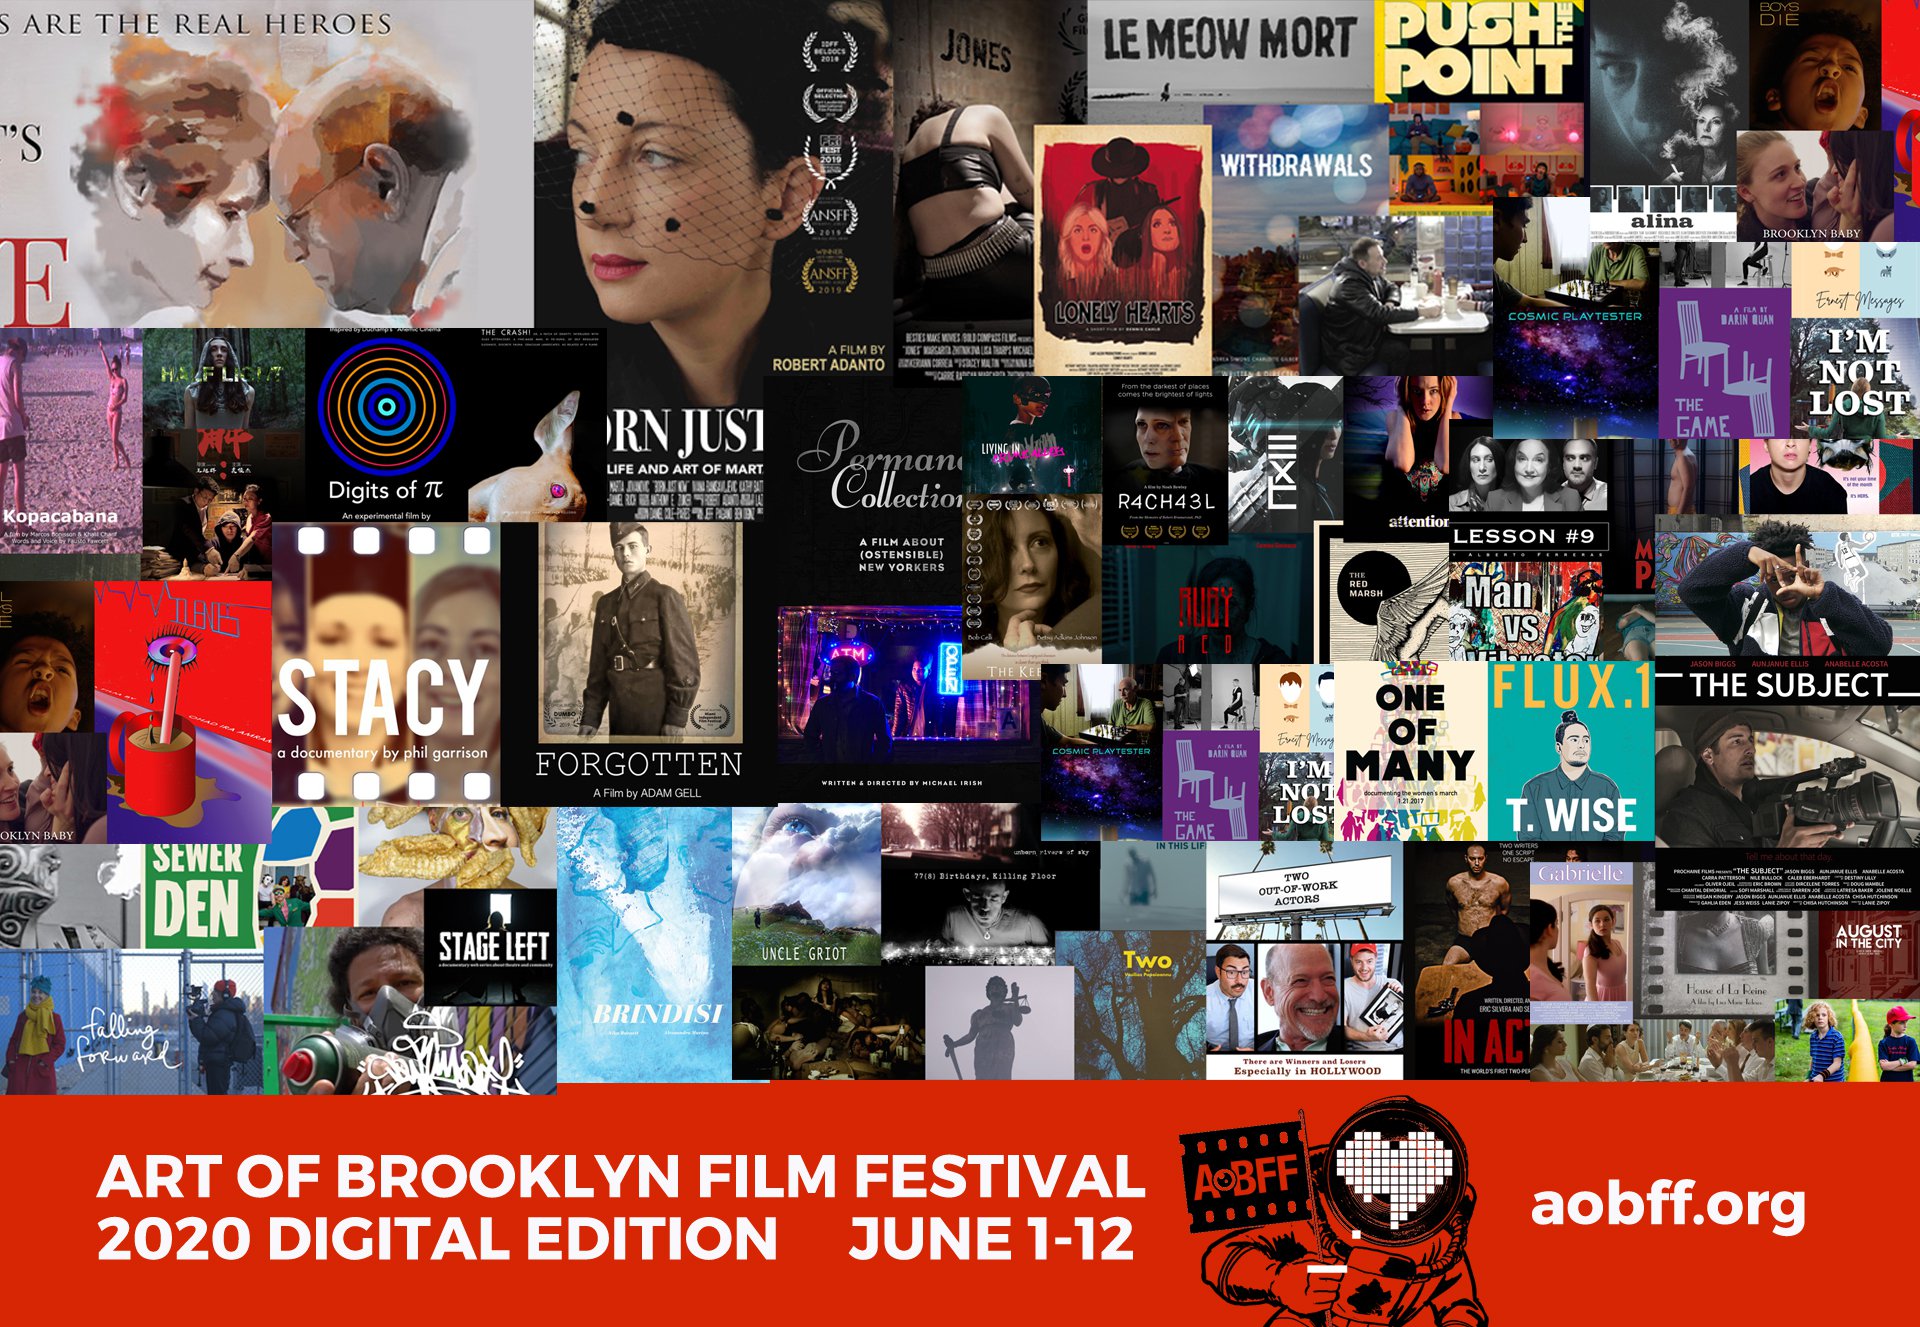 The Art of Brooklyn Film Festival celebrates a decade with a digital